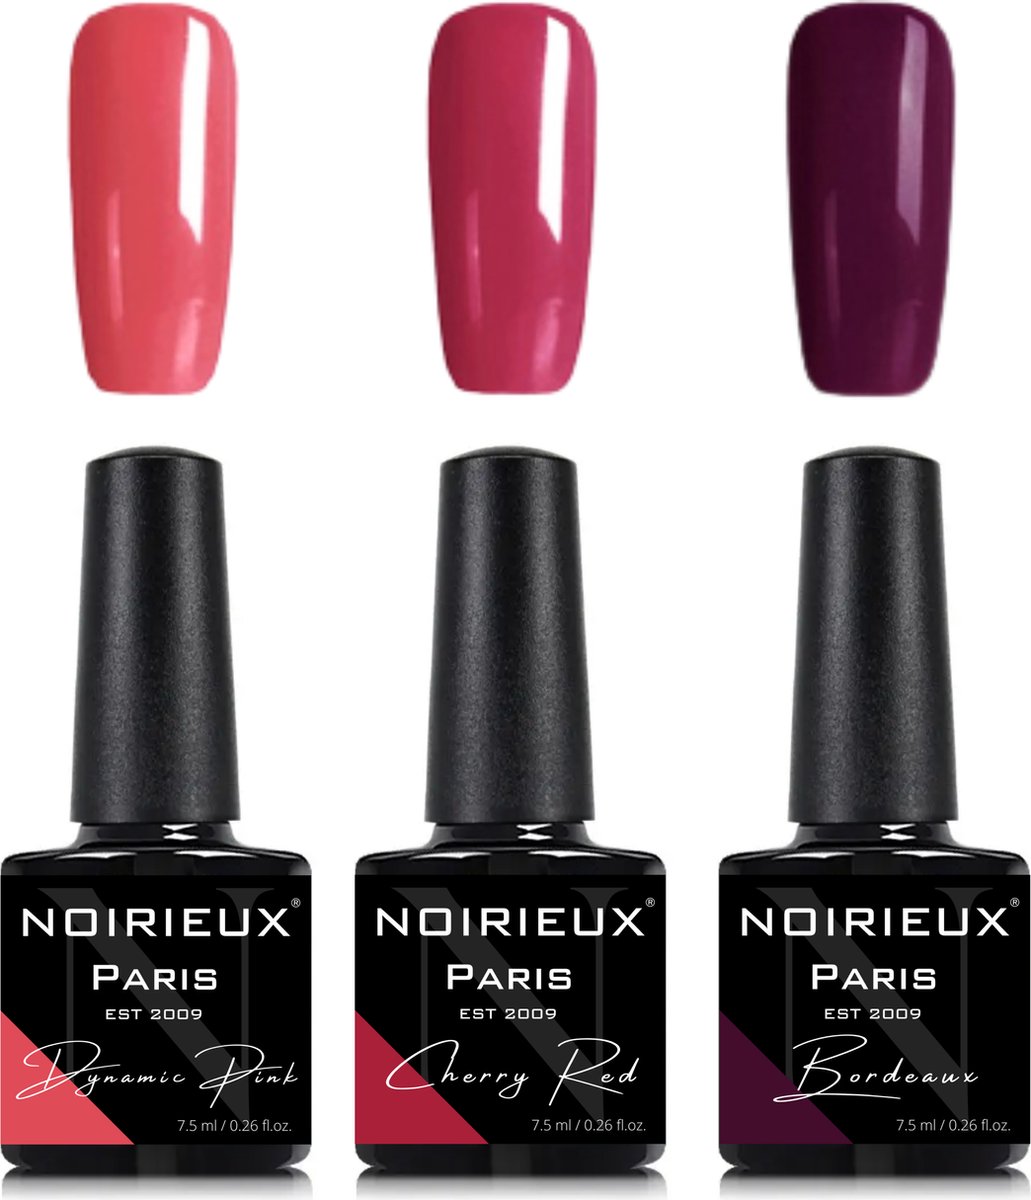 Gellak - NOIRIEUX® Premium Gellak - Nagellak - Gel nagellak - Dynamic Pink, Cherry Red & Bordeaux